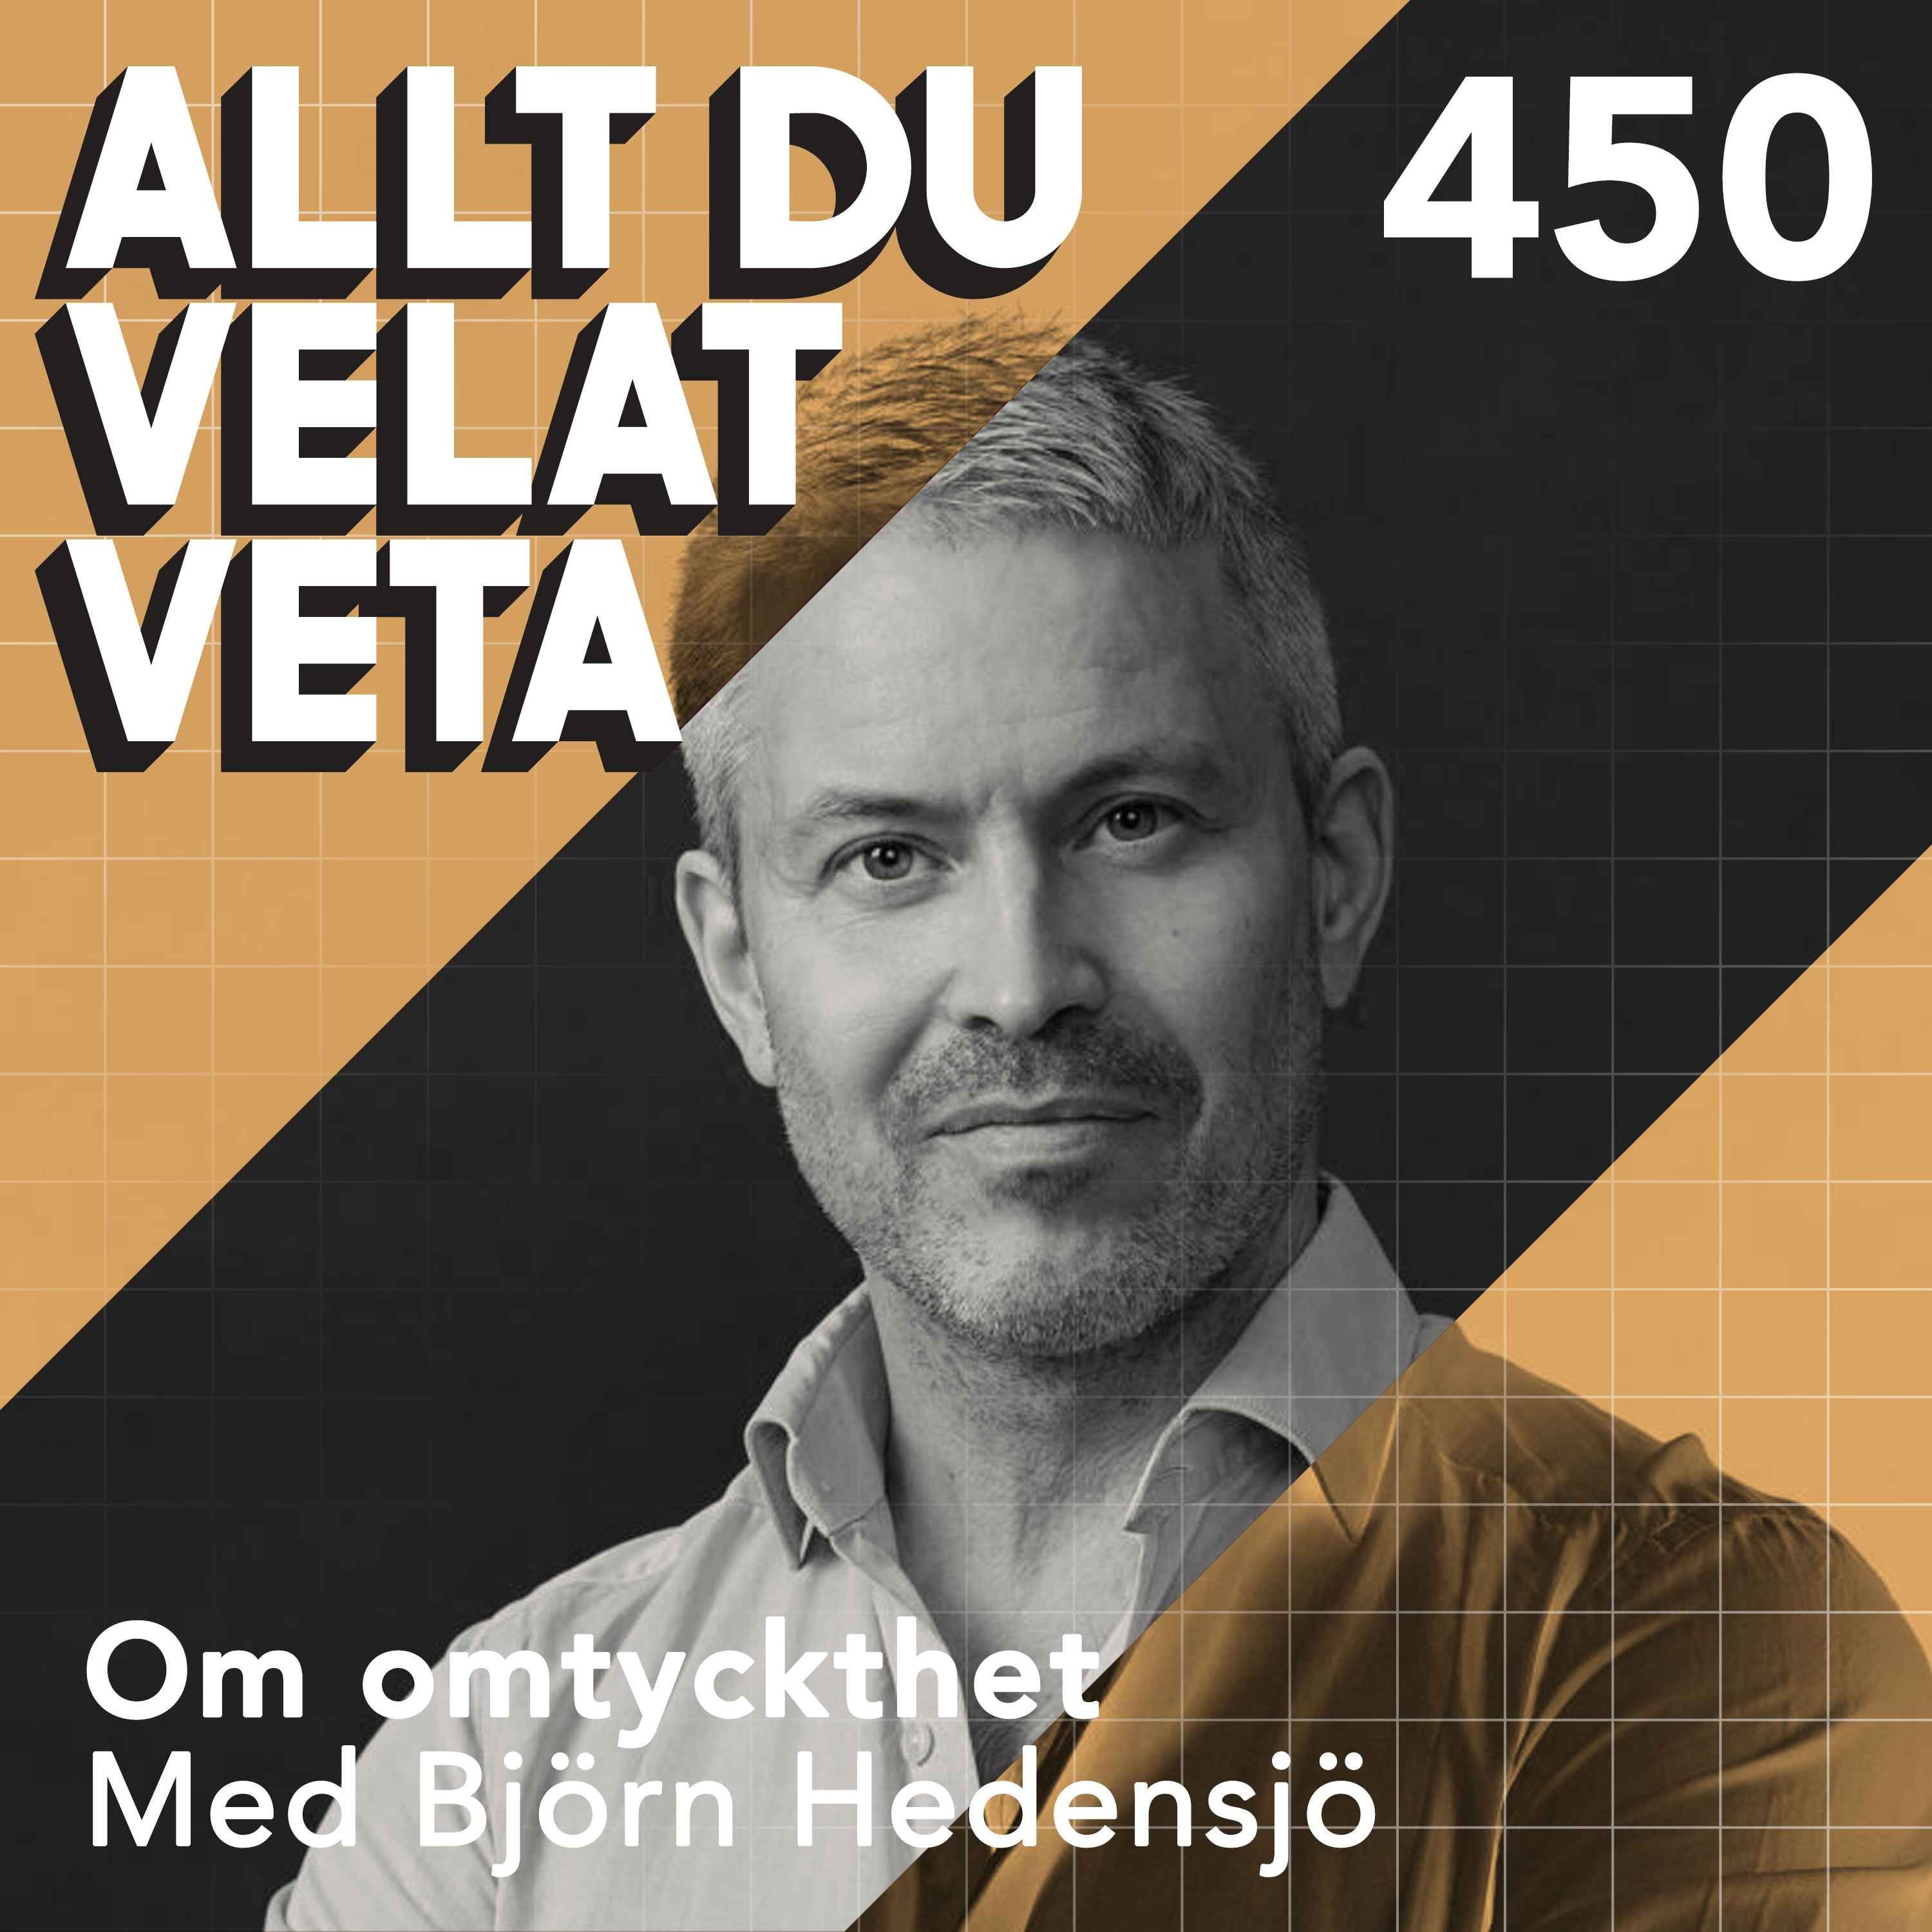 450 Om omtyckthet med Björn Hedensjö